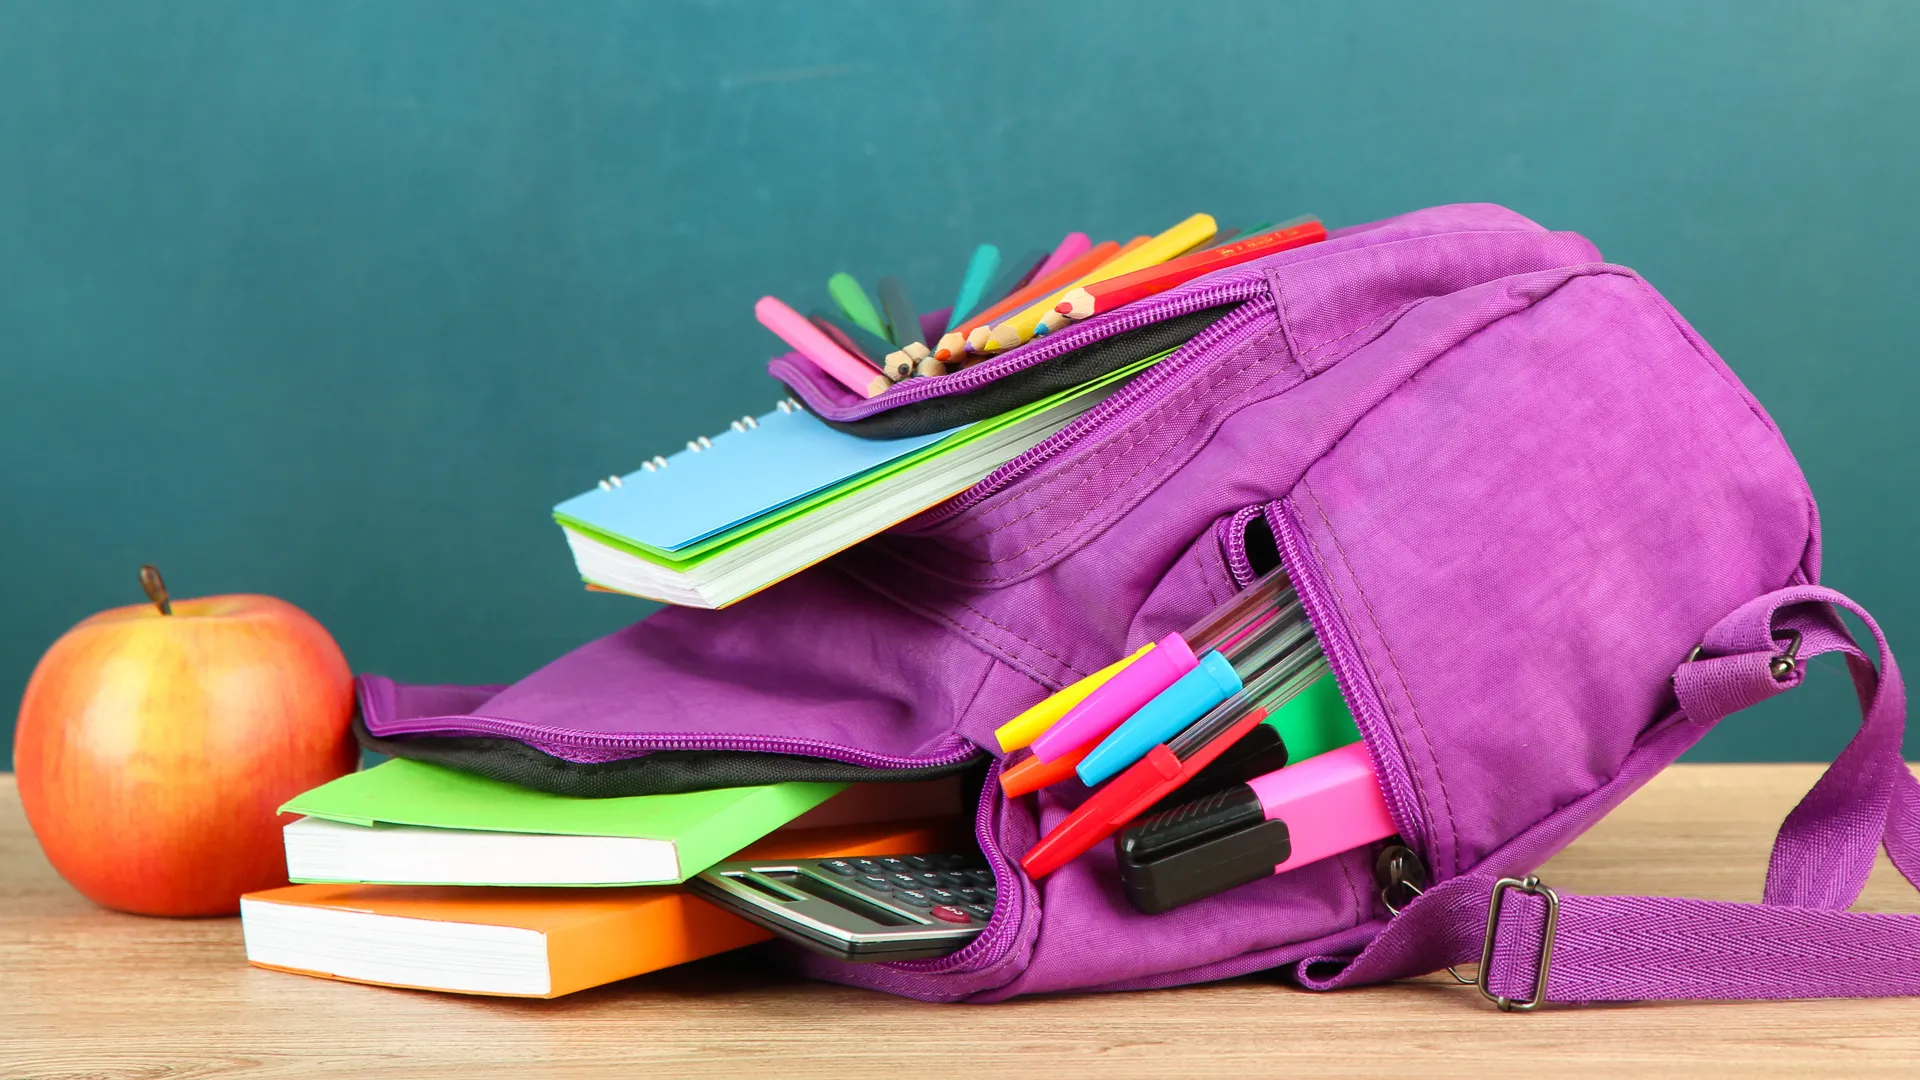 紫色背包和学校用品在木桌上绿色的桌子上backgroundPurple背包和学校用品在木桌上绿色的桌子上backgroundPurple背包和学校用品绿色桌子上的背景。